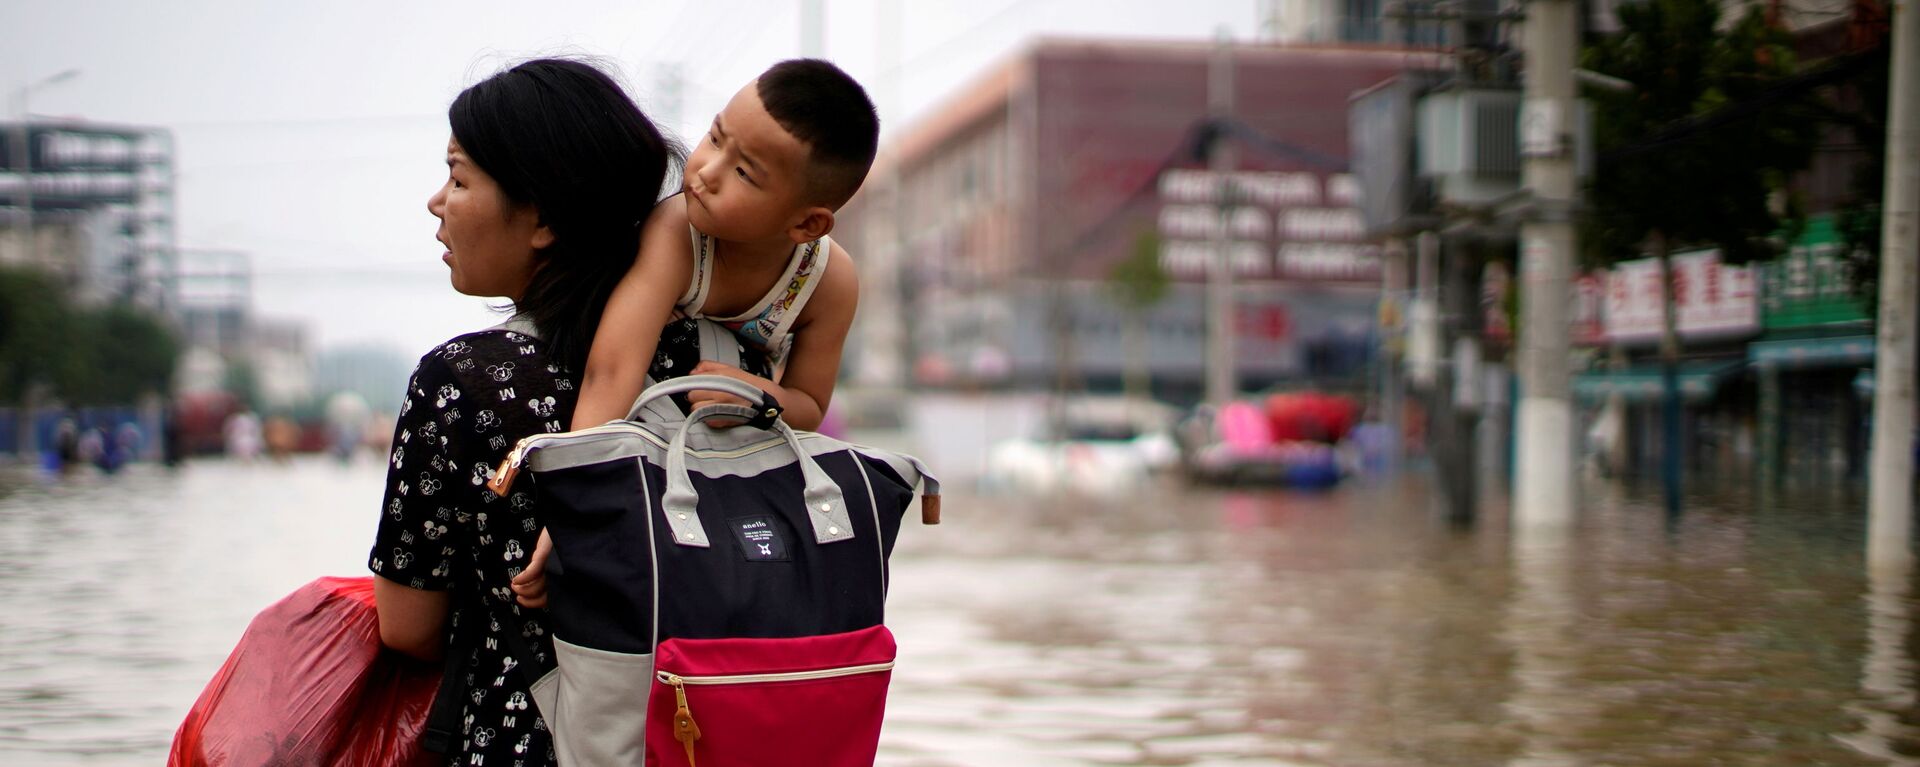 Женщина с ребенком и вещами пробирается через паводковые воды после проливного дождя в Чжэнчжоу, провинция Хэнань, Китай - Sputnik Молдова, 1920, 26.07.2021